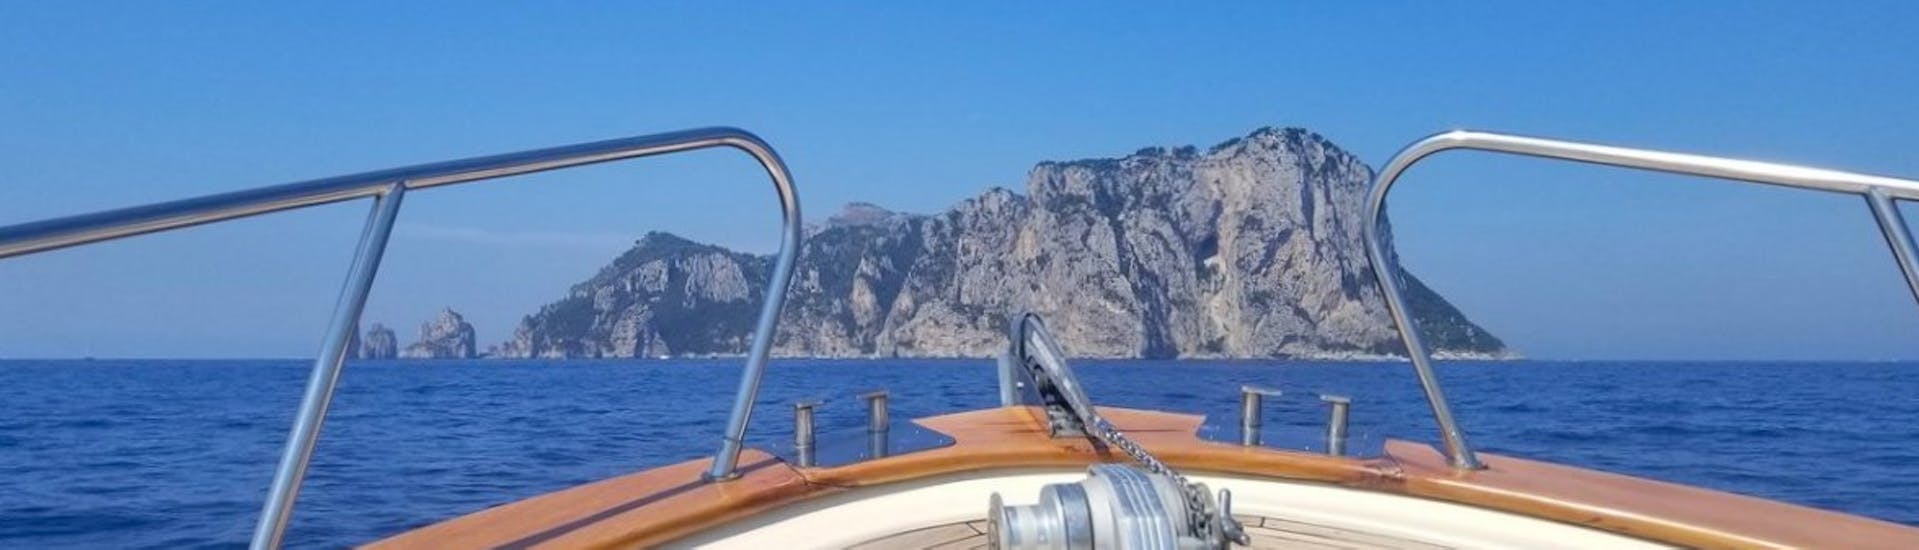 Paseo en barco a Capri y sus cuevas con parada para nadar y bebida de bienvenida.